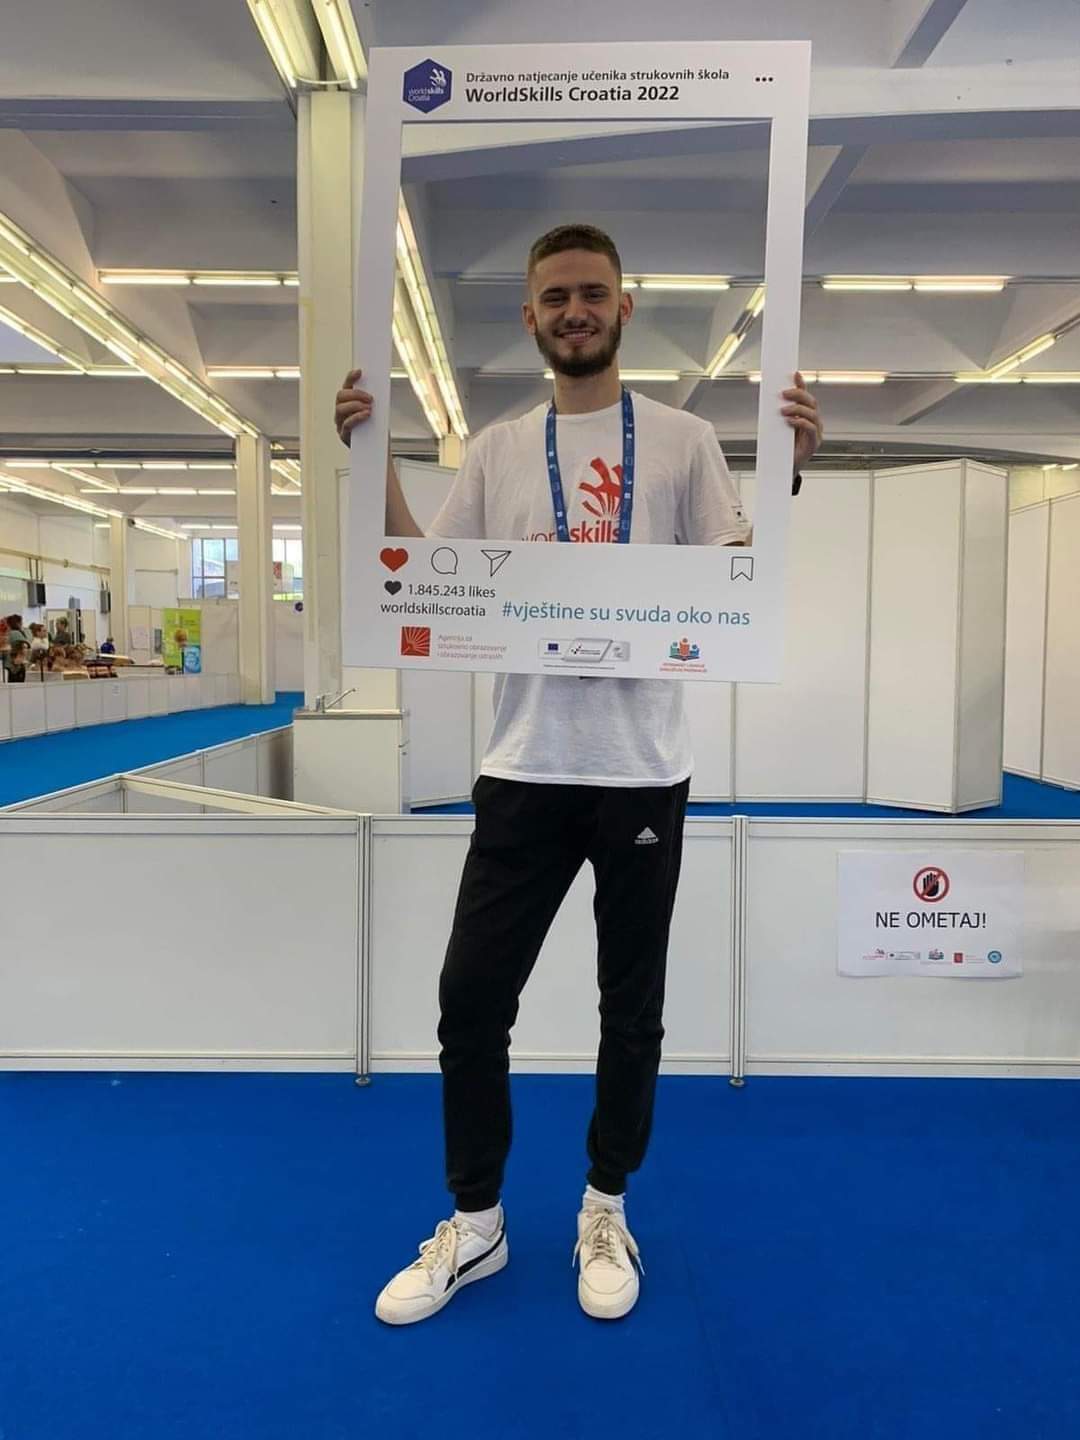 Požega.eu | Naše gore list: Učenik Josip Bilić iz Sesveta osvojio zlatnu medalju na Worldskills Croatia 2022.